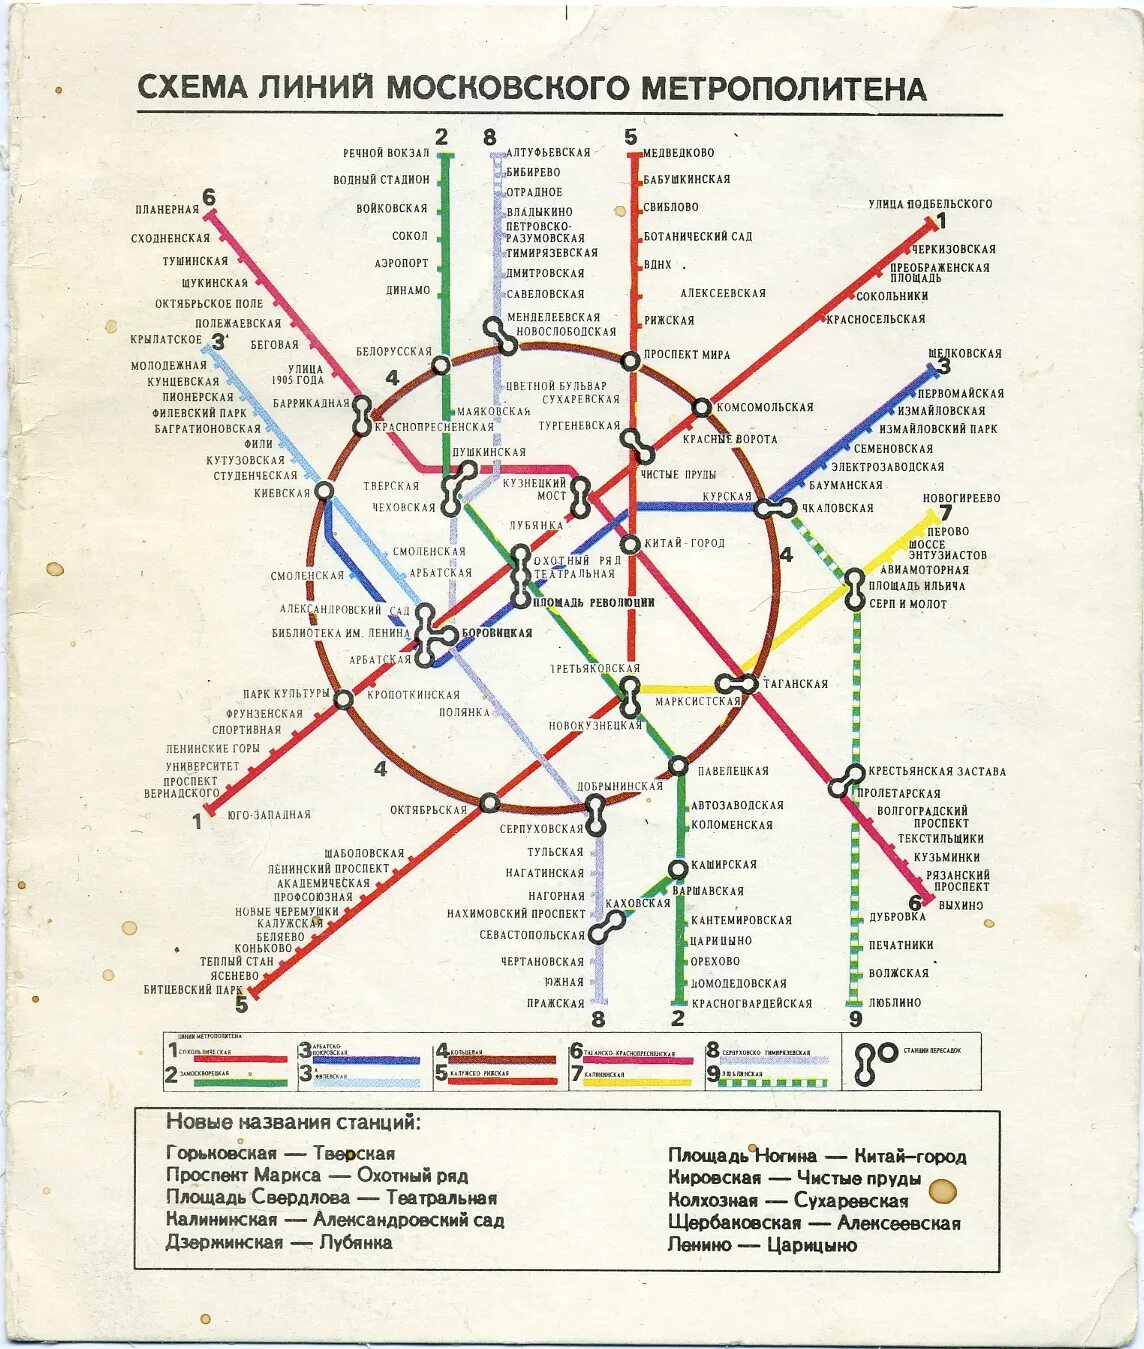 Карта метрополитена Москва 1992 года. Схема линий Московского метрополитена. Карта метро 2000 года Москва. Карта Московского метрополитена 2000 года. Название старого метро